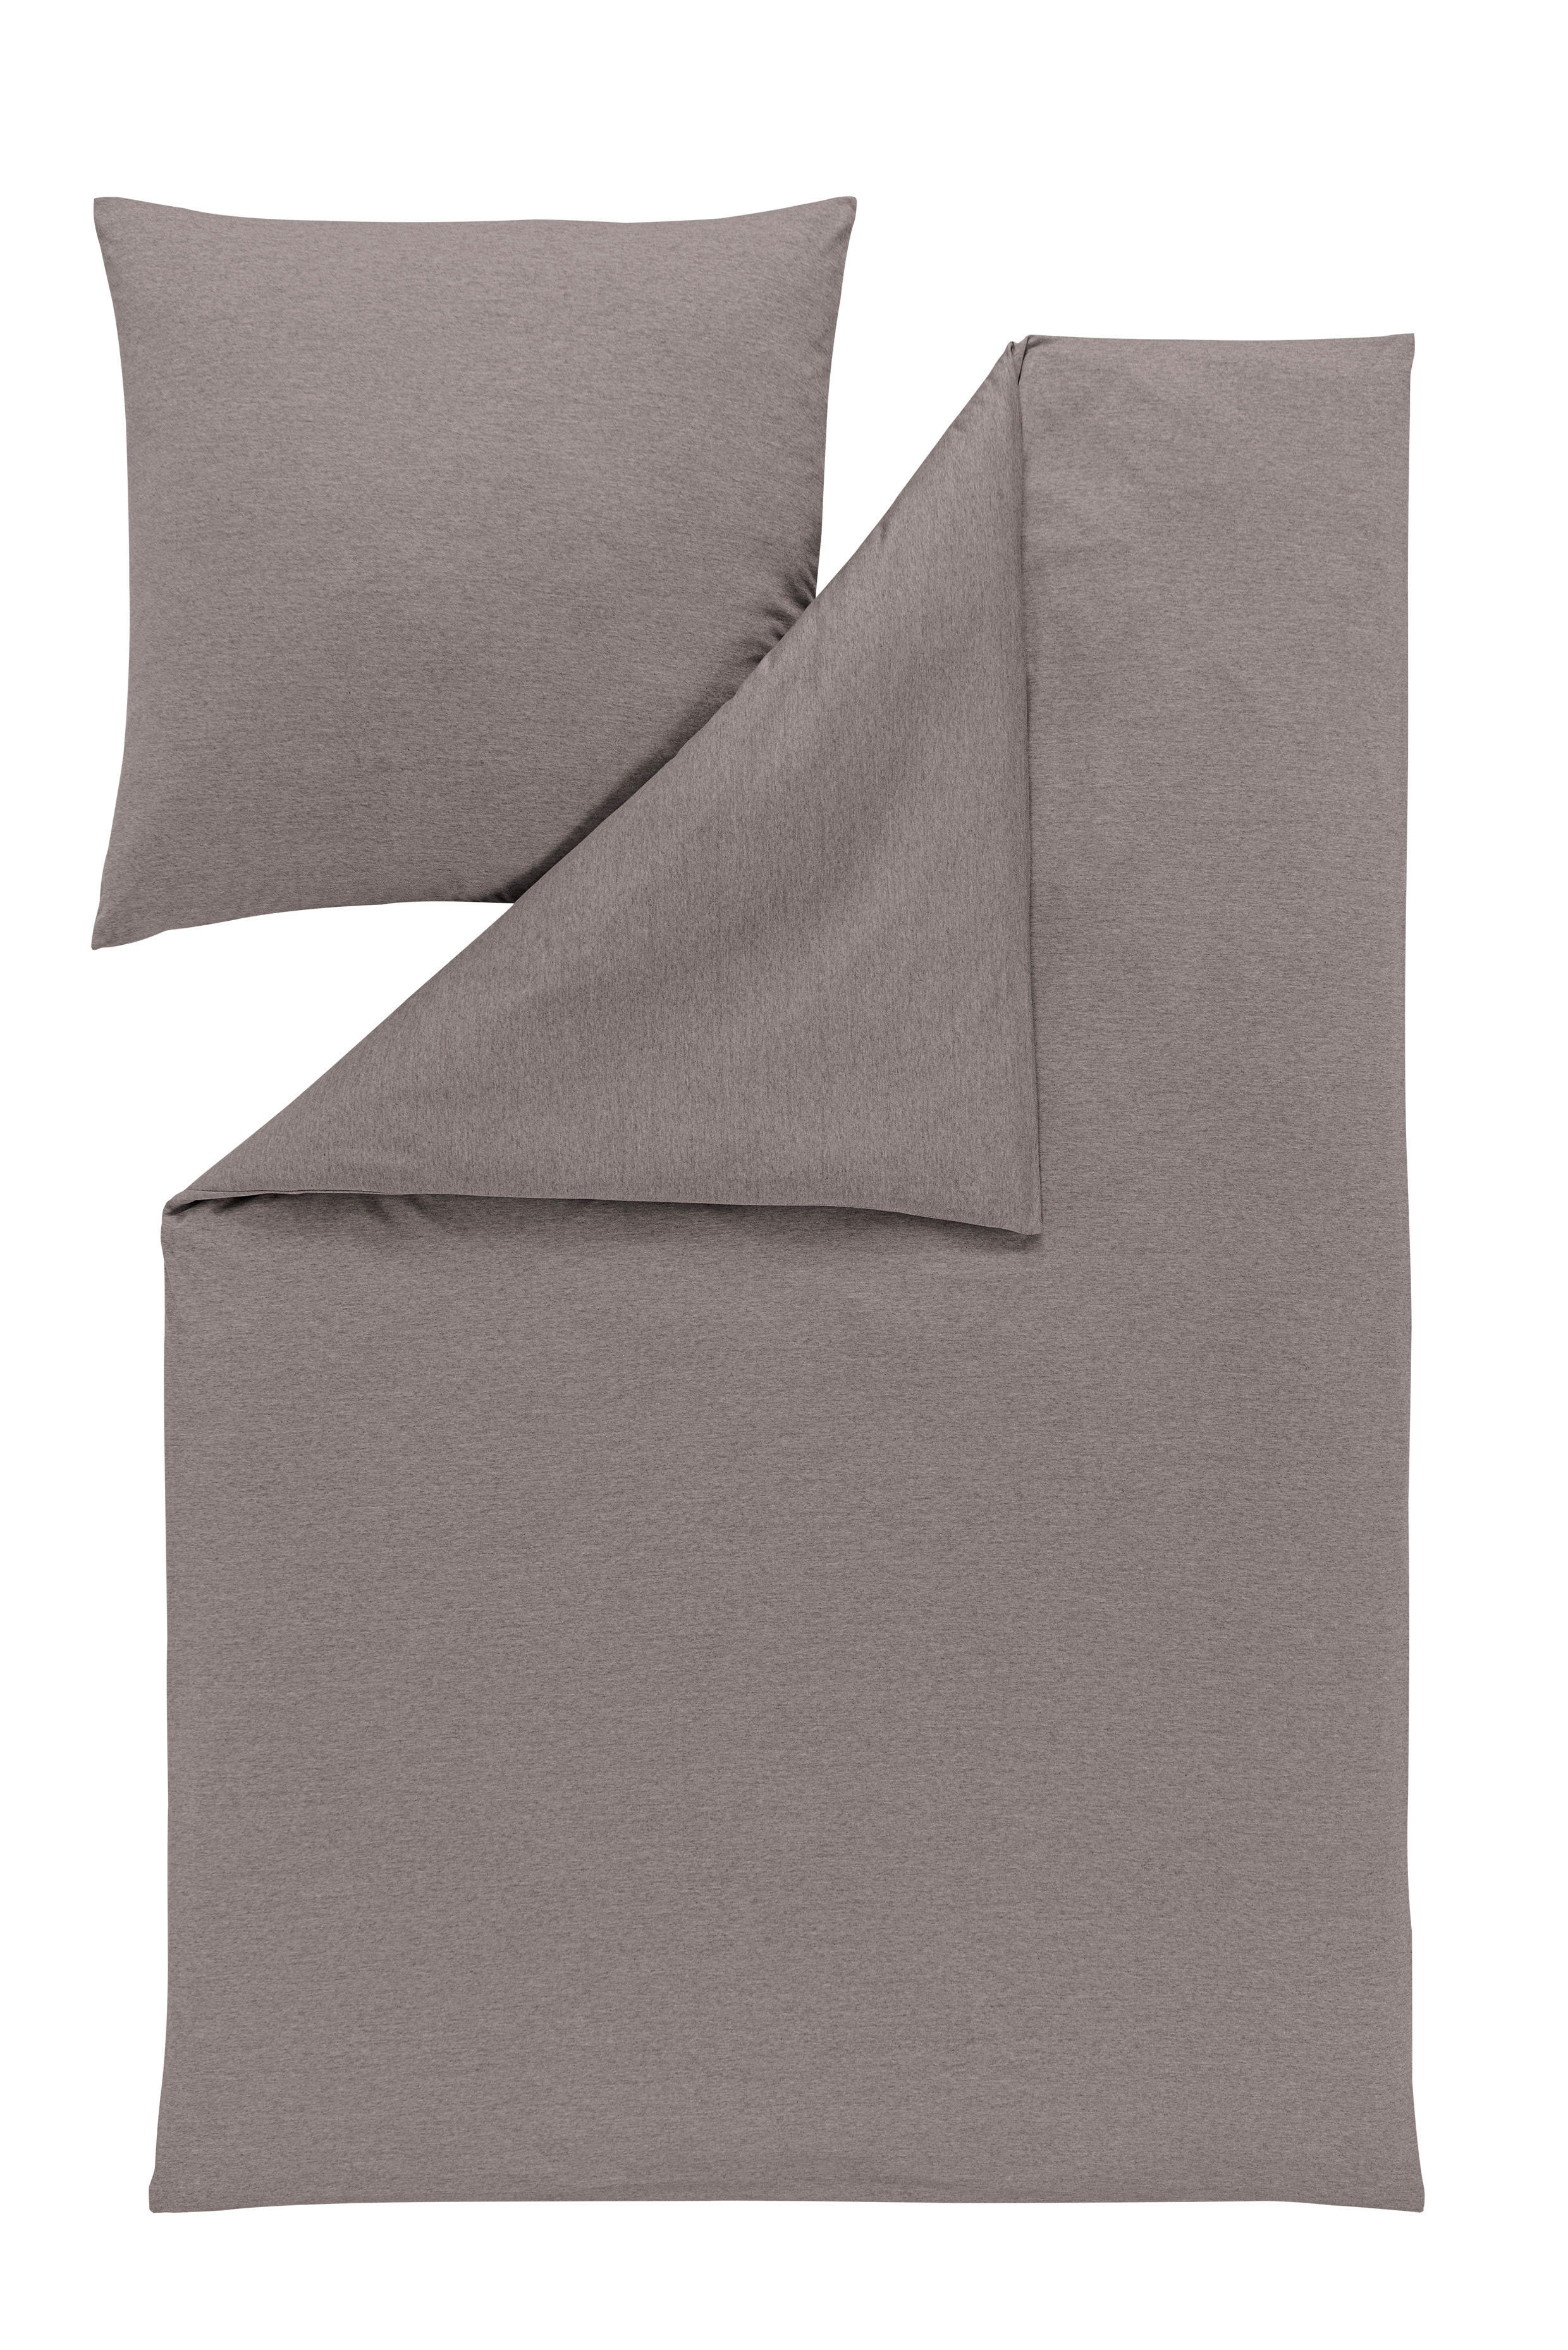 BETTWÄSCHE Interlock-Jersey  - Taupe, KONVENTIONELL, Textil (135/200cm) - Estella